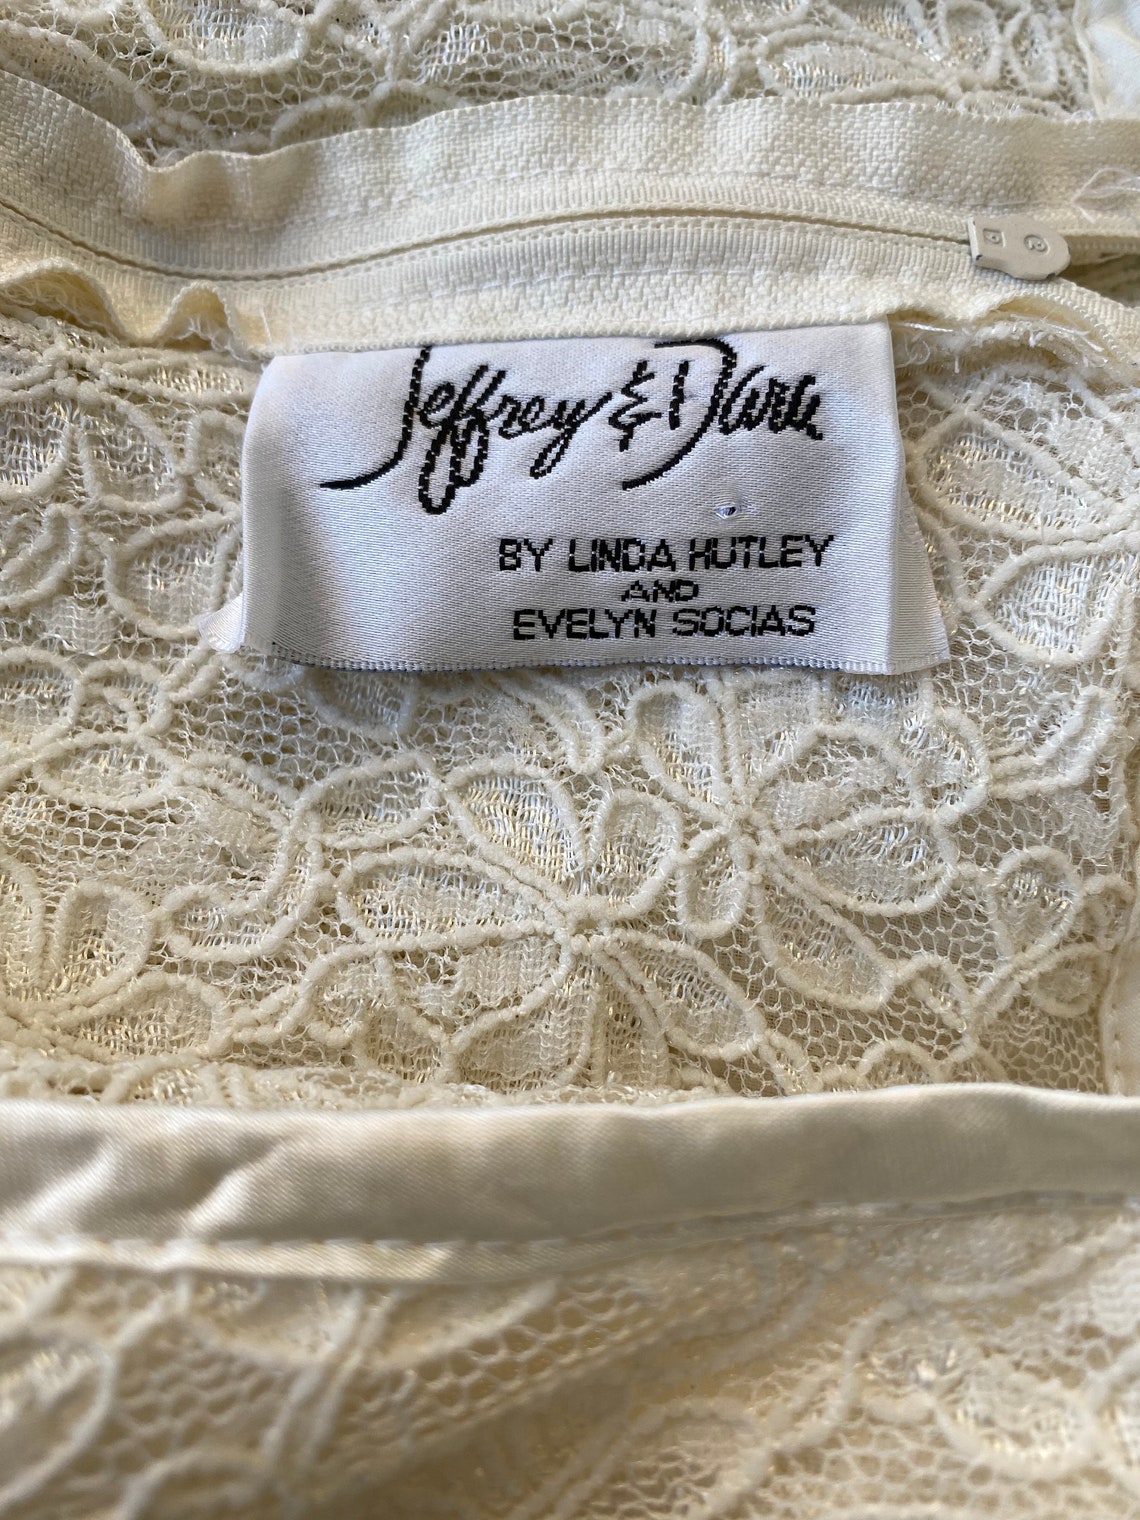 1980s Cream Stretch Lace Dress by Jeffery & Dara Size M by - Etsy